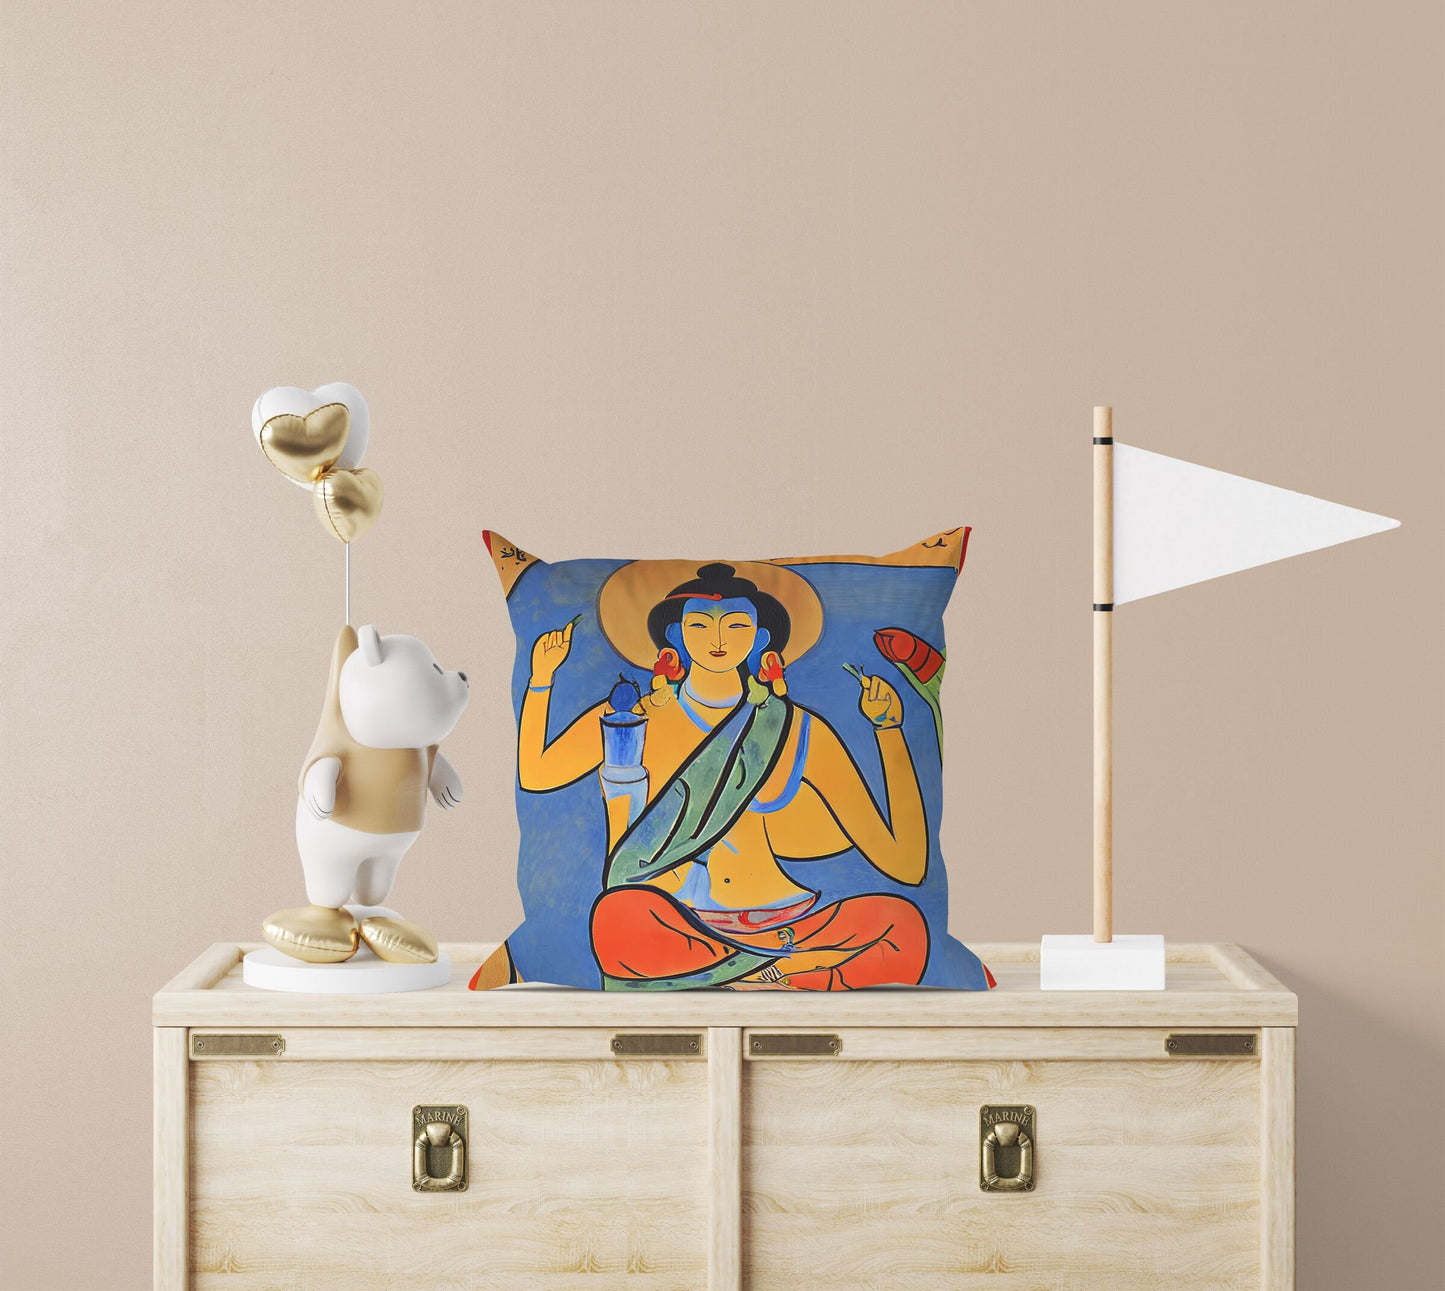 Buddhist Bodhisattva, Throw Pillow, Abstract Art Pillow, Designer Pillow, Colorful Pillow Case, Modern Pillow, 18 X 18 Pillow Covers